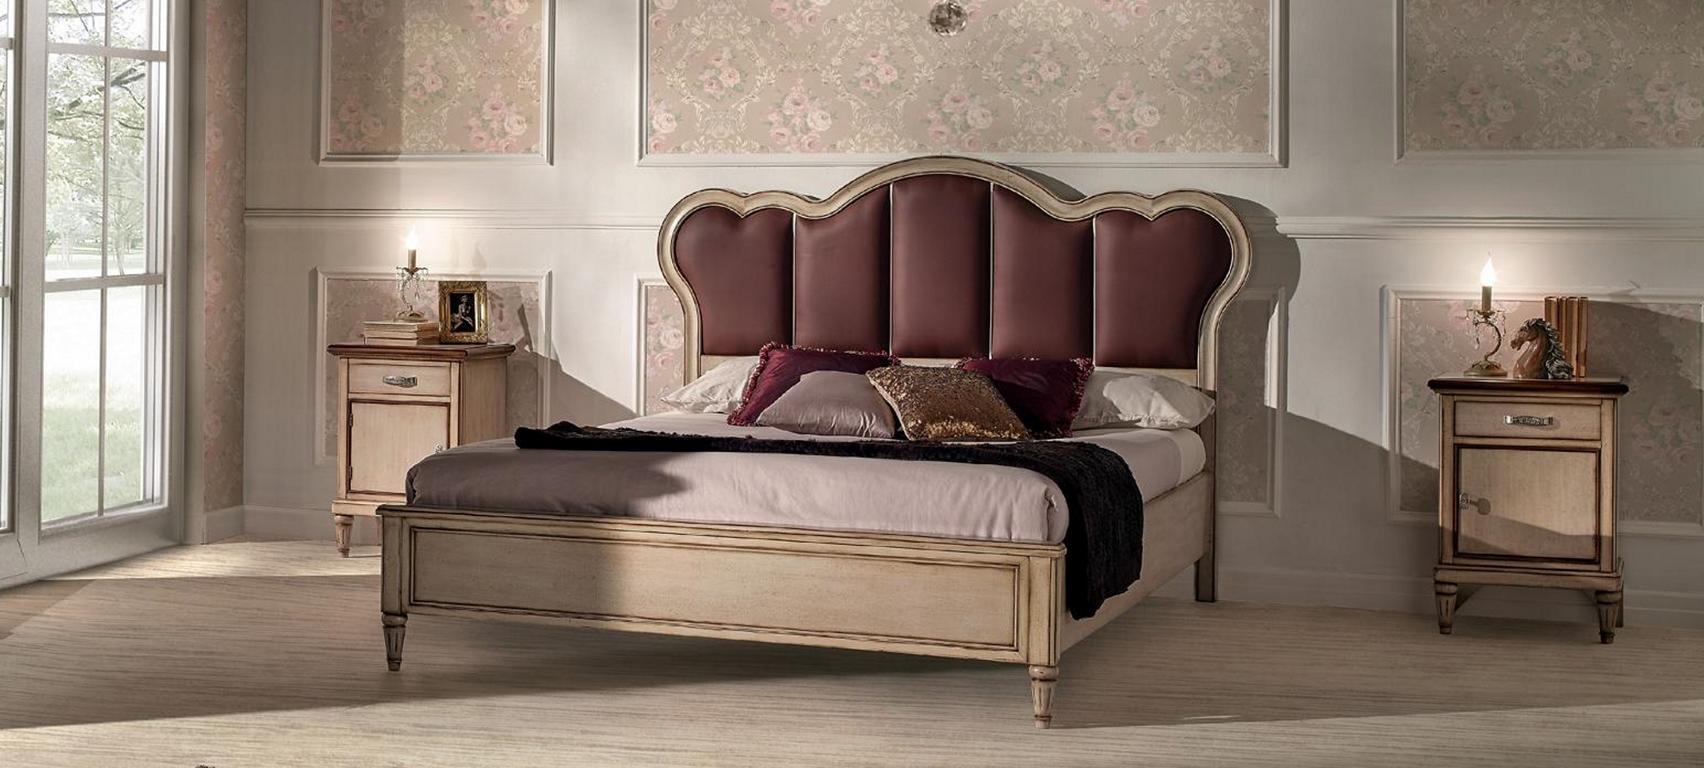 Doppelbett Schlafzimmer Hotel Ehe Luxus Bett 2x Nachttisch 3pcs Bett Set neue Möbel